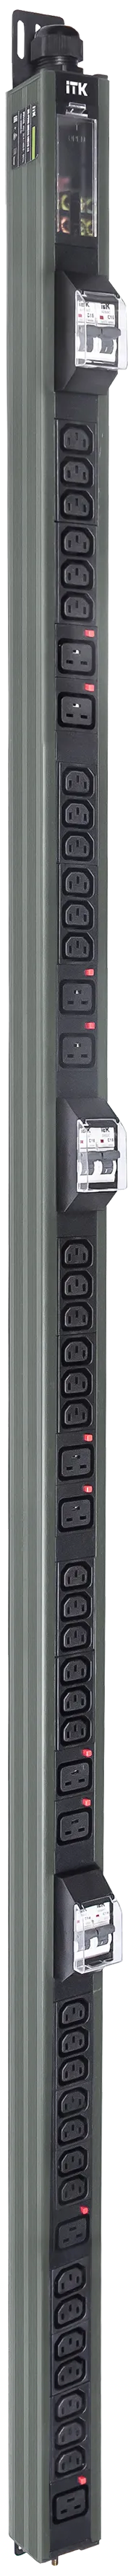 ITK BASE PDU вертикальный PV1113 45U 3 фазы 32А 38 розеток C13 + 10 розеток C19 с клеммной колодкой и кабелем 6м вилка IEC60309 (промышленная) серый